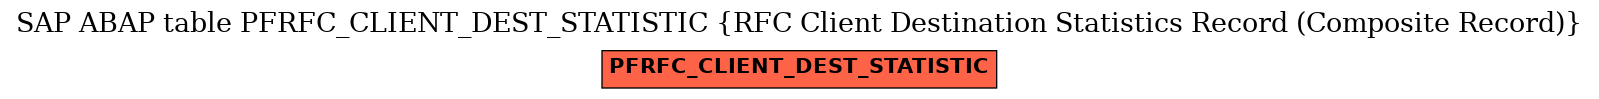 E-R Diagram for table PFRFC_CLIENT_DEST_STATISTIC (RFC Client Destination Statistics Record (Composite Record))